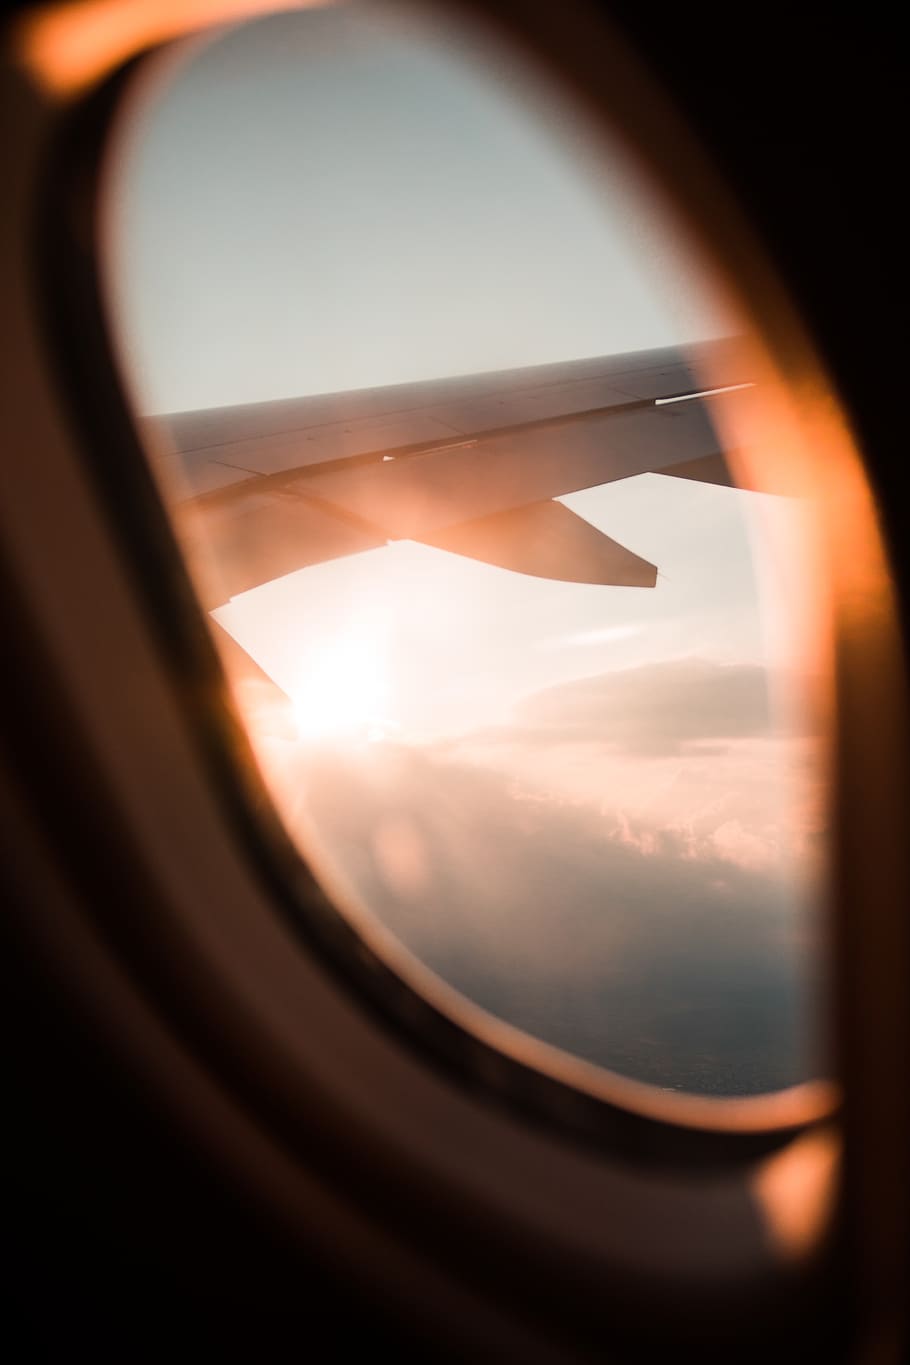 passenger plane window during daytime, sun, sky, sunlight, lens flare